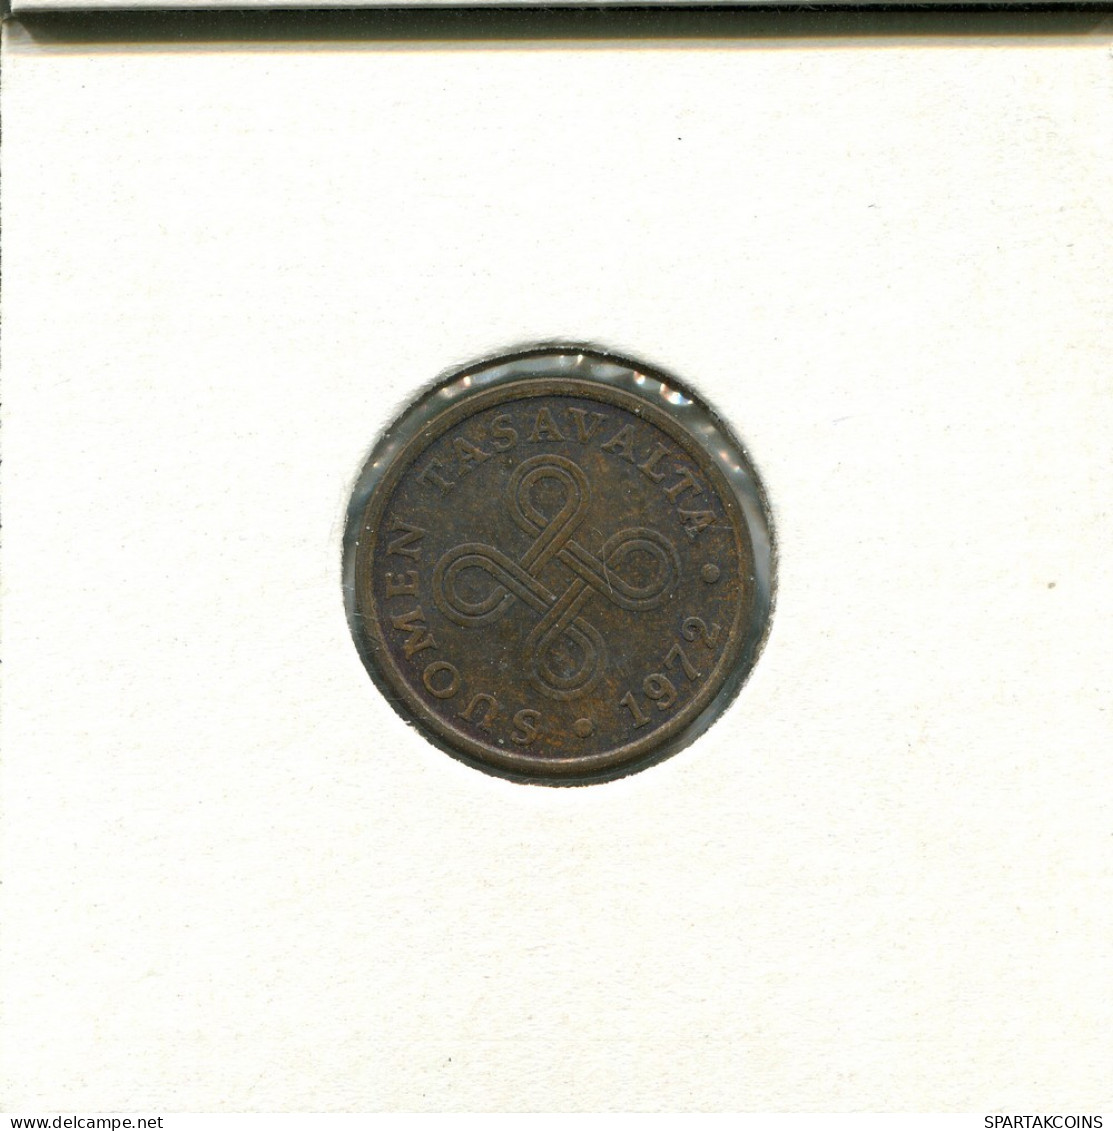 5 PENNYA 1972 FINLAND Coin #AS724.U.A - Finlande